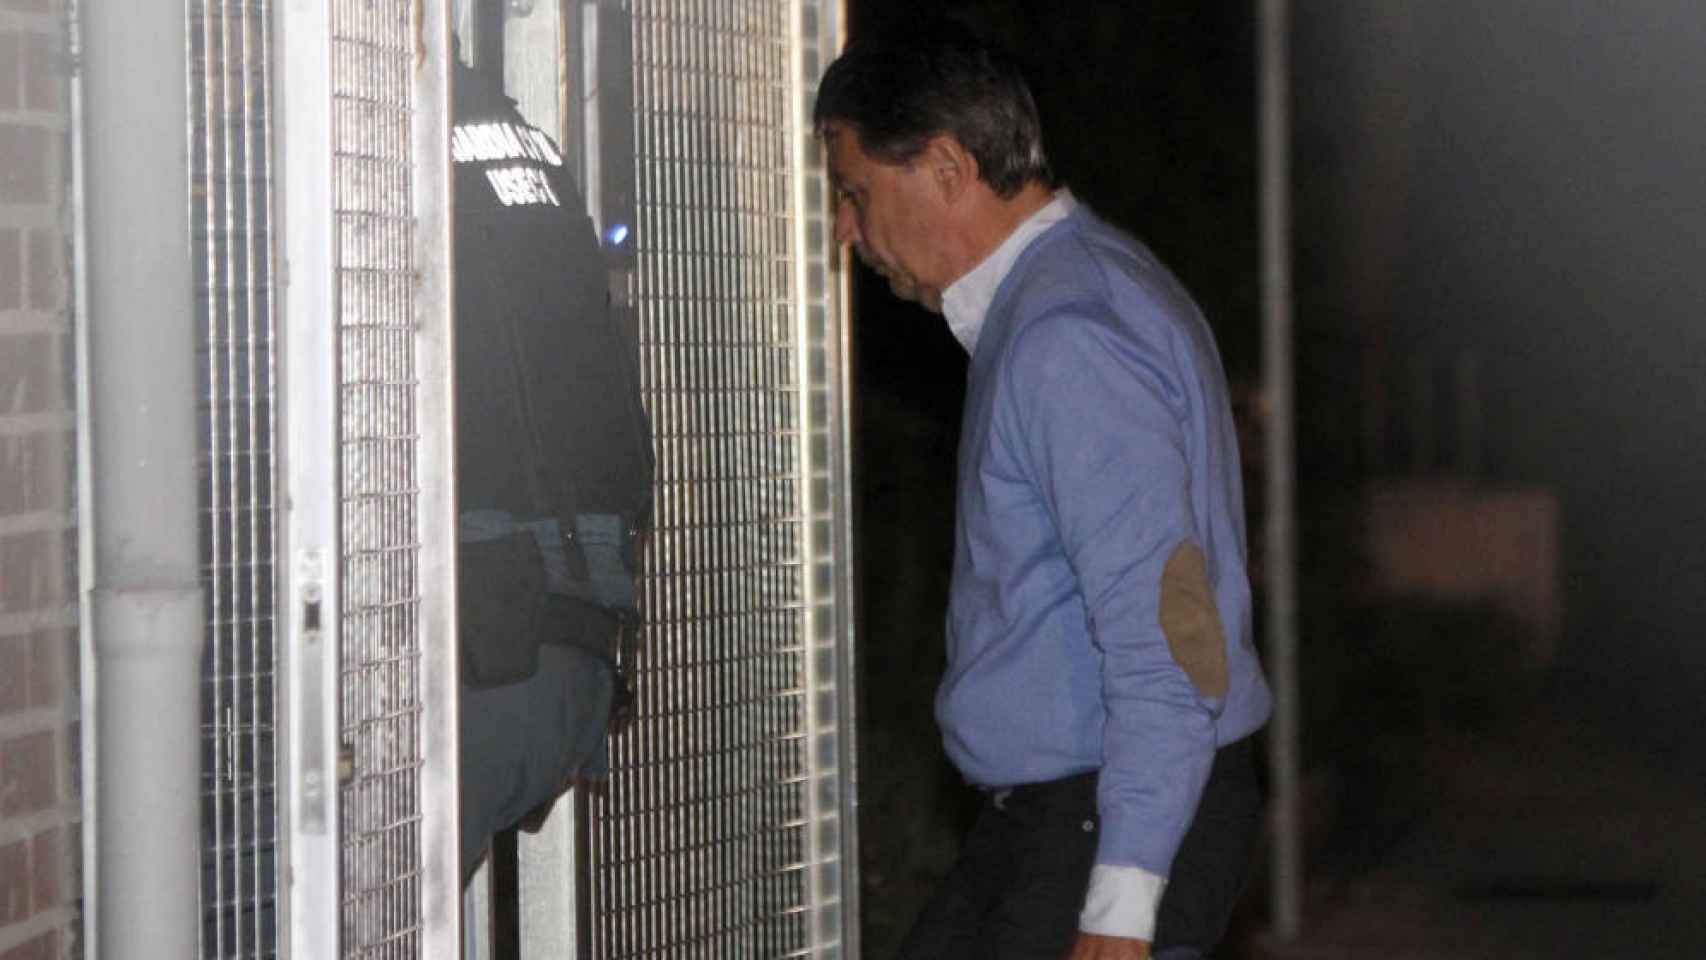 Ignacio González ha entrado en la prisión de Soto del Real tras ser detenido por la Operación Lezo